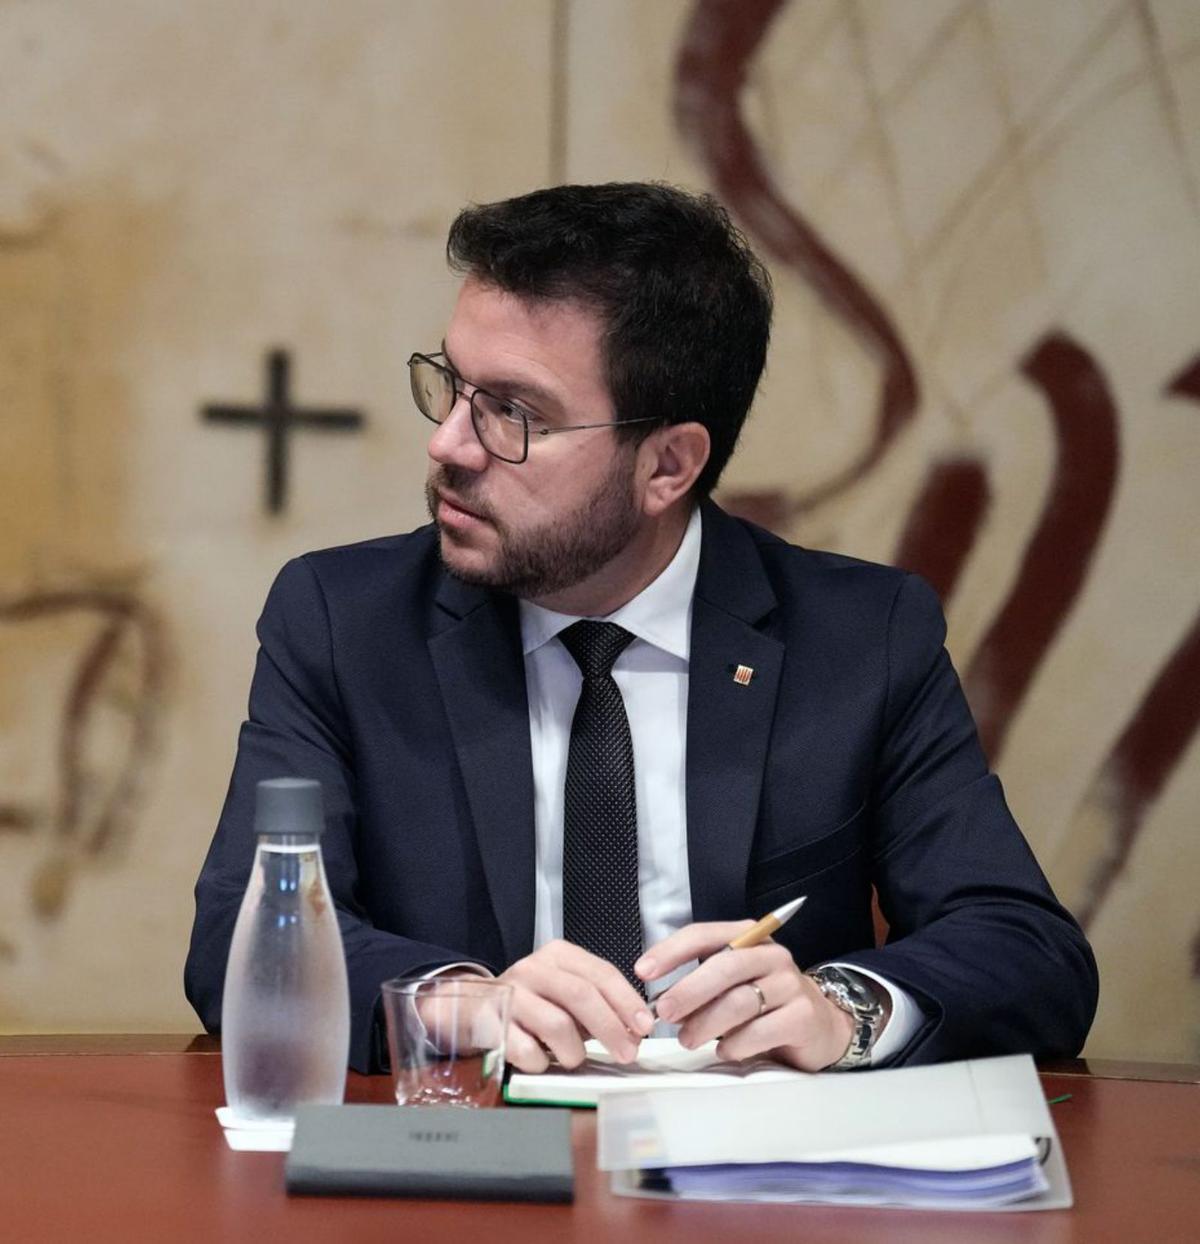 Aragonès proposarà avui vies jurídiques per pactar un referèndum